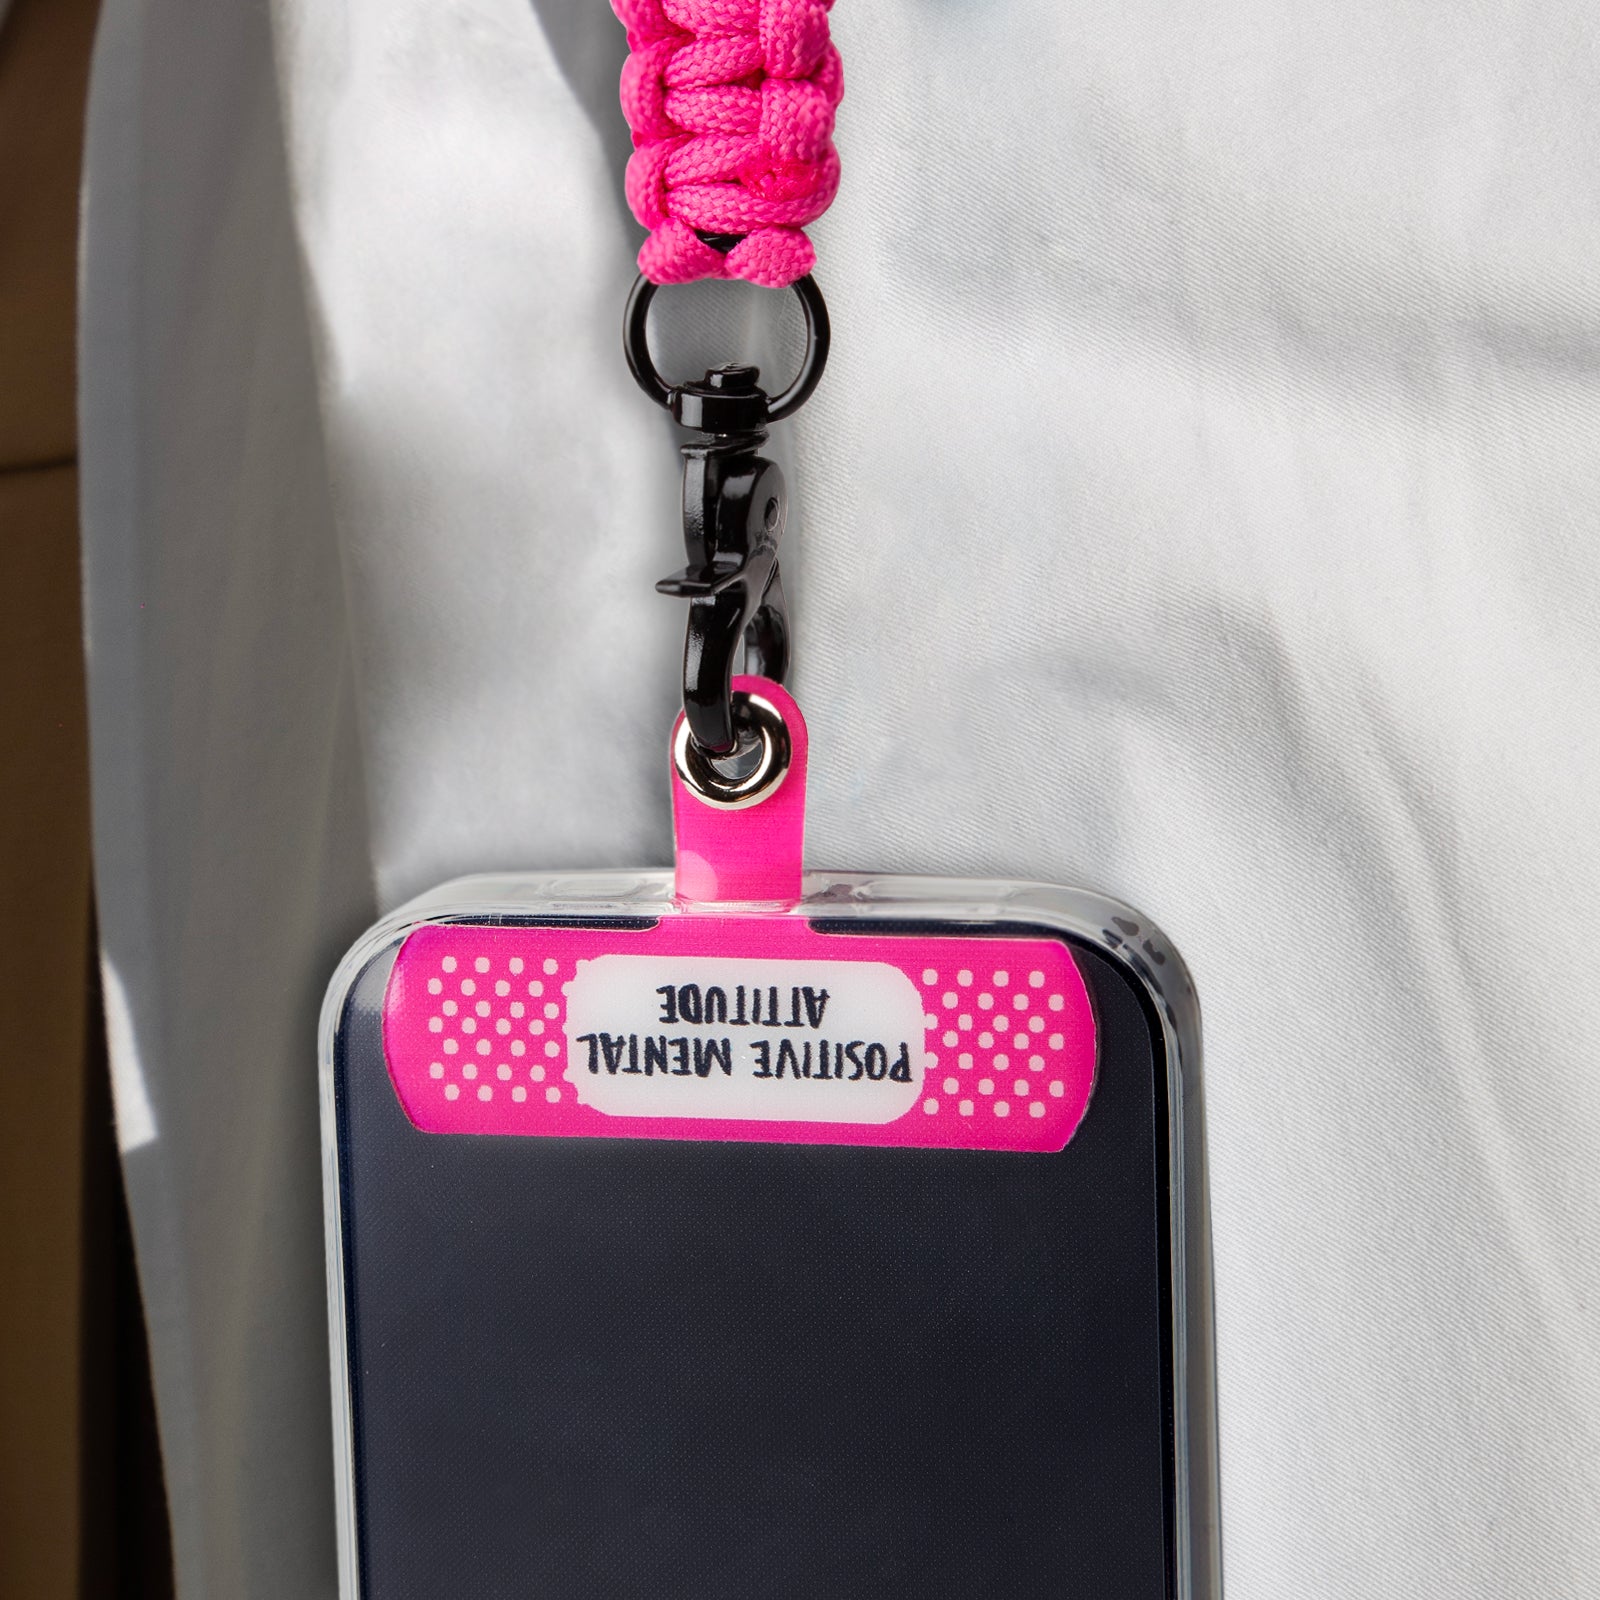 Ni funda ni bolso: así es el nuevo accesorio que arrasa entre jóvenes para  llevar tu móvil (la mascarilla o las llaves)